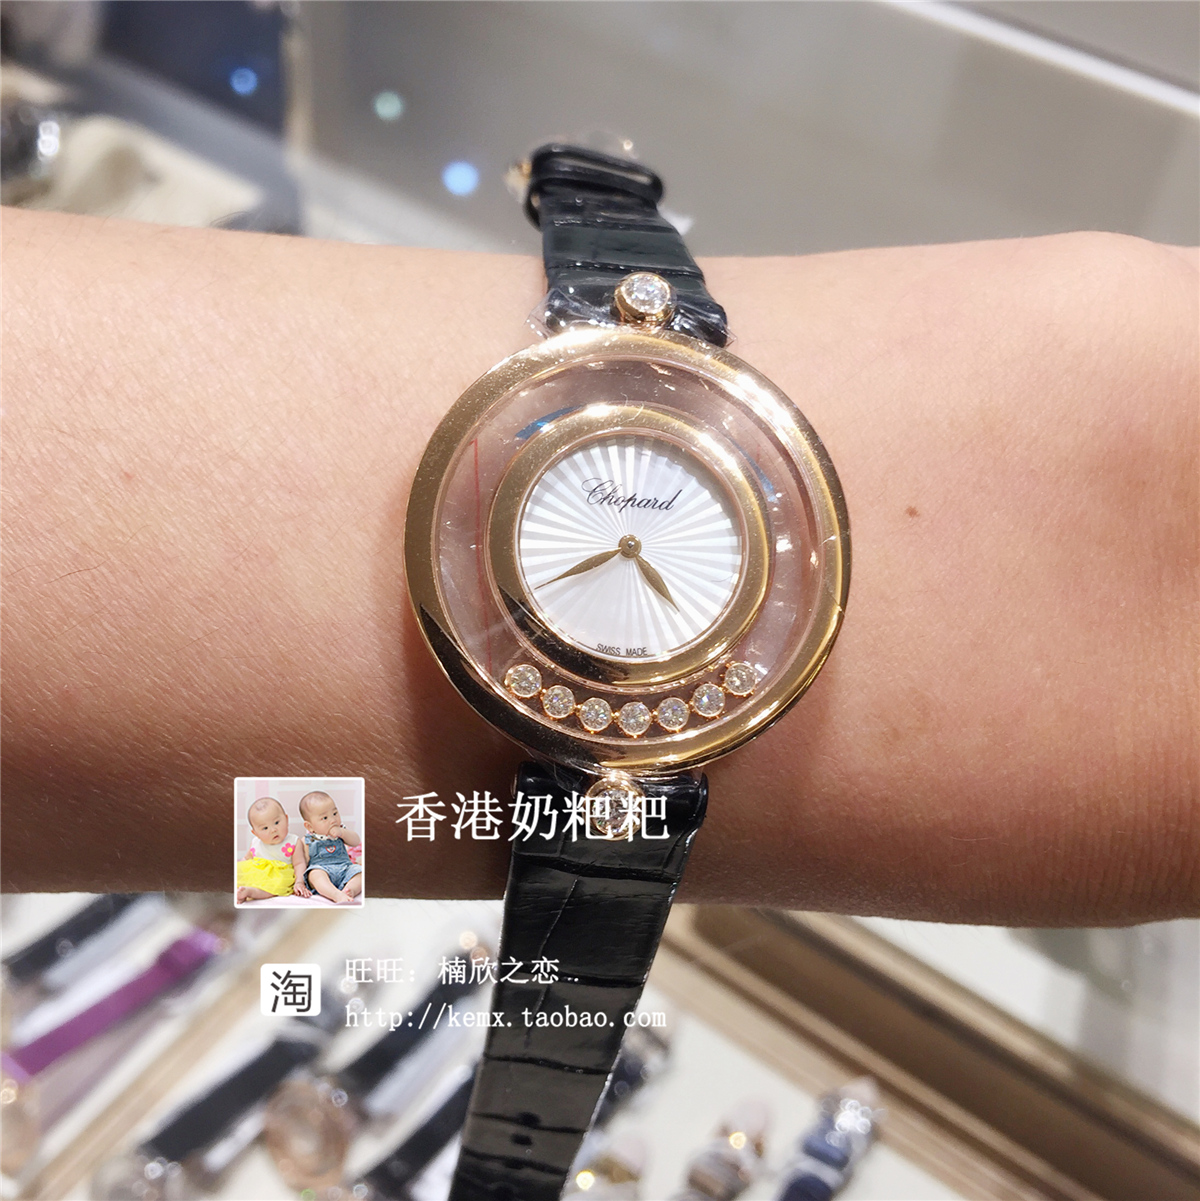 2、最近出现在时代广场的手表是什么牌子的？ 